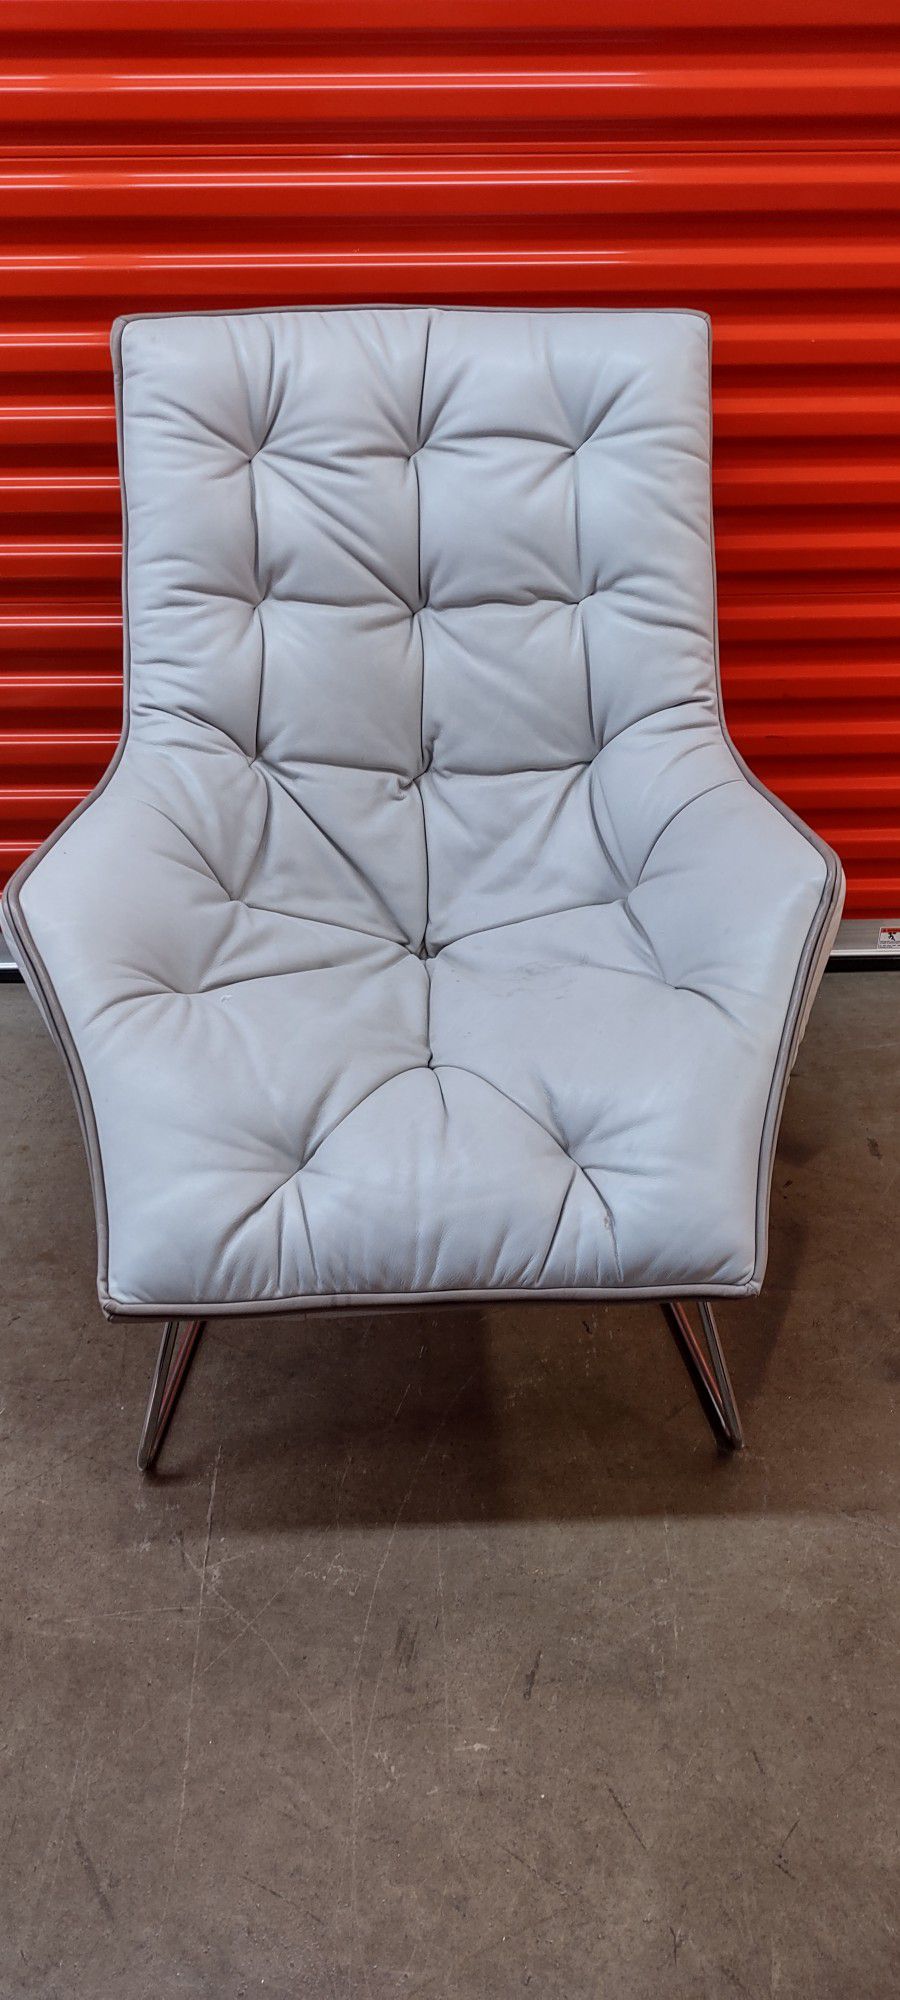 Grandtour Maserati Lounge Chair by Zanotta Limited Edition